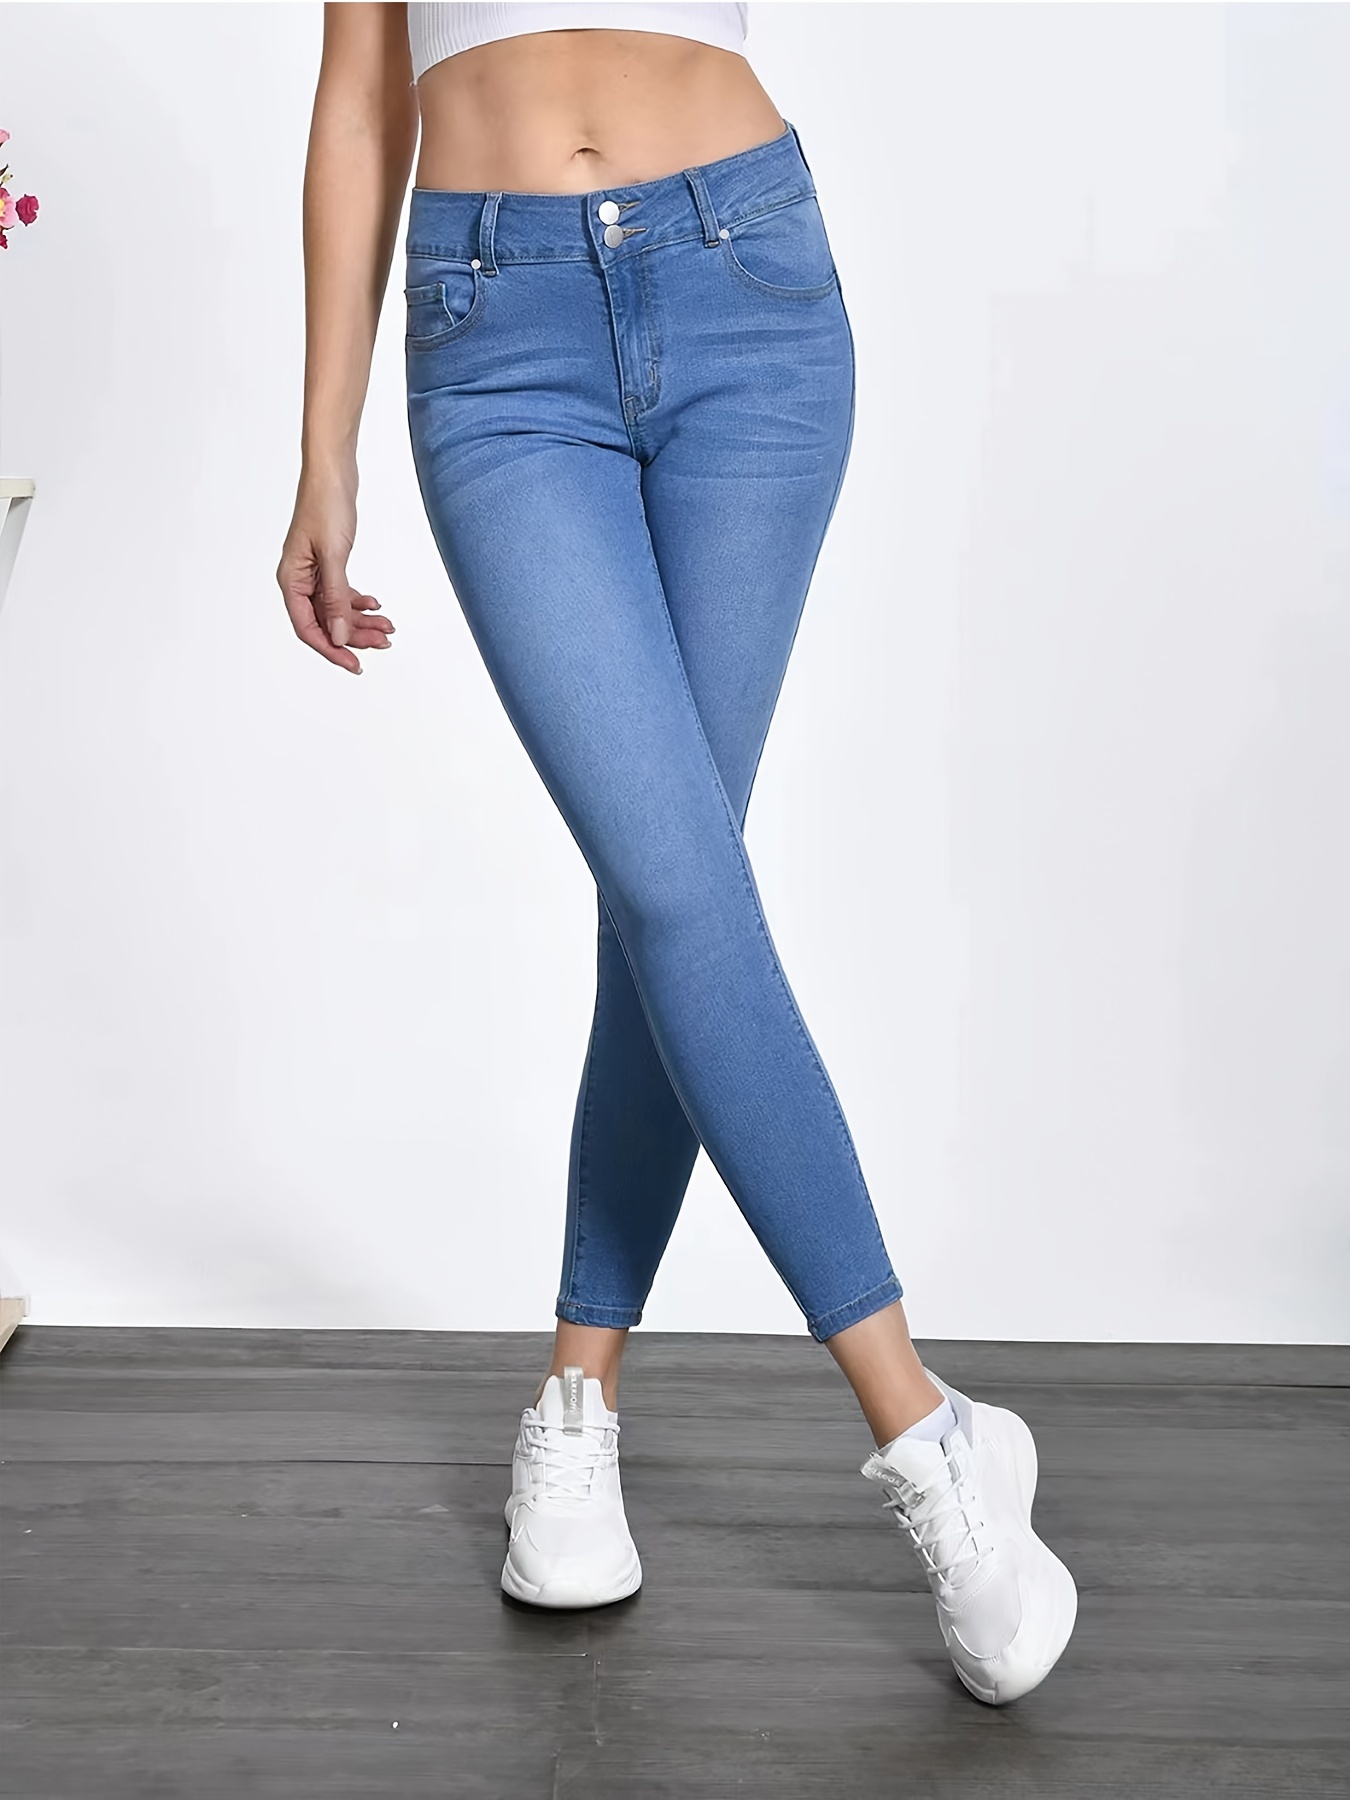 Skinny Jeans de cintura alta mujer pantalones de mezclilla